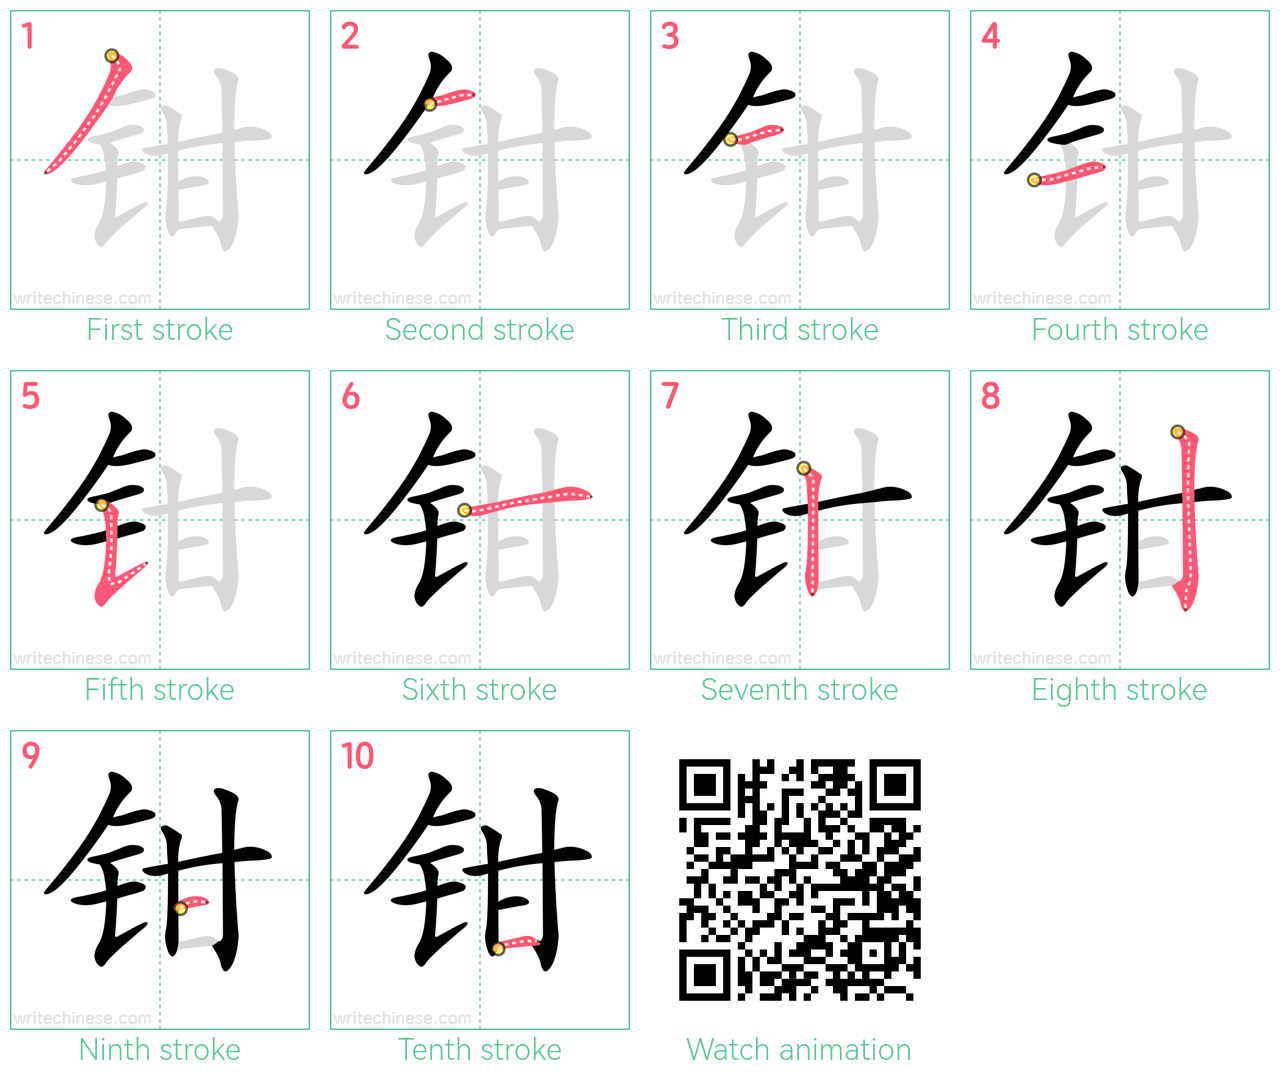 钳 step-by-step stroke order diagrams